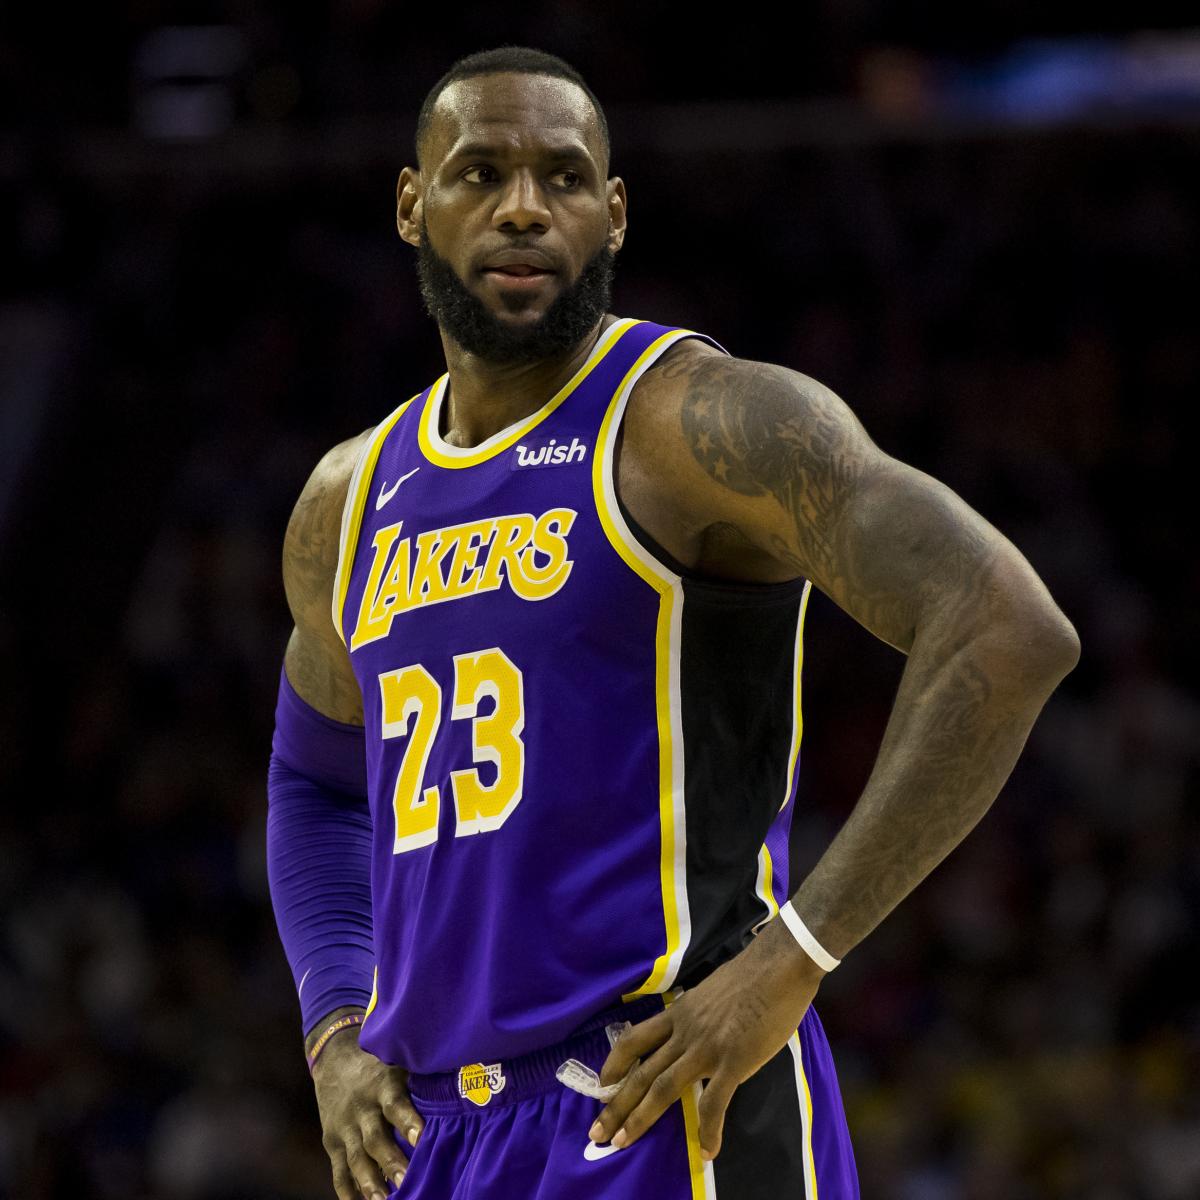 LA Lakers' legend LeBron James to wear No. 23 again